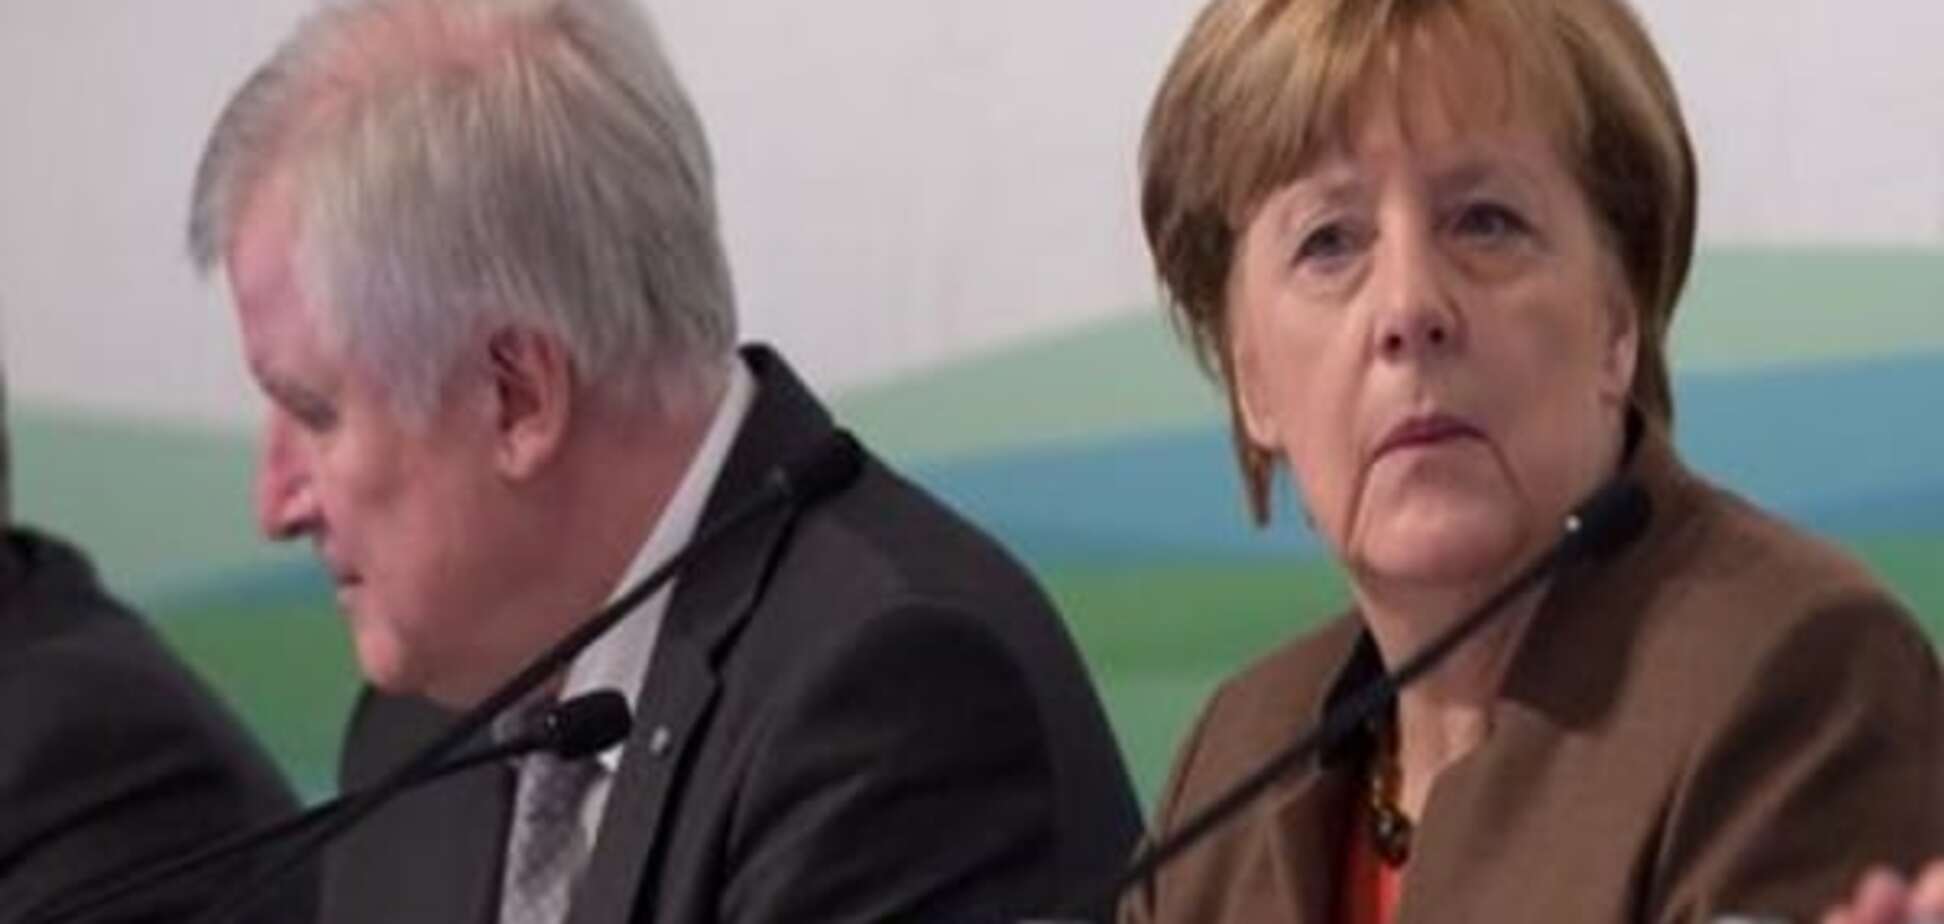 Немецкие СМИ выяснили, зачем главный критик Меркель собрался в гости к Путину